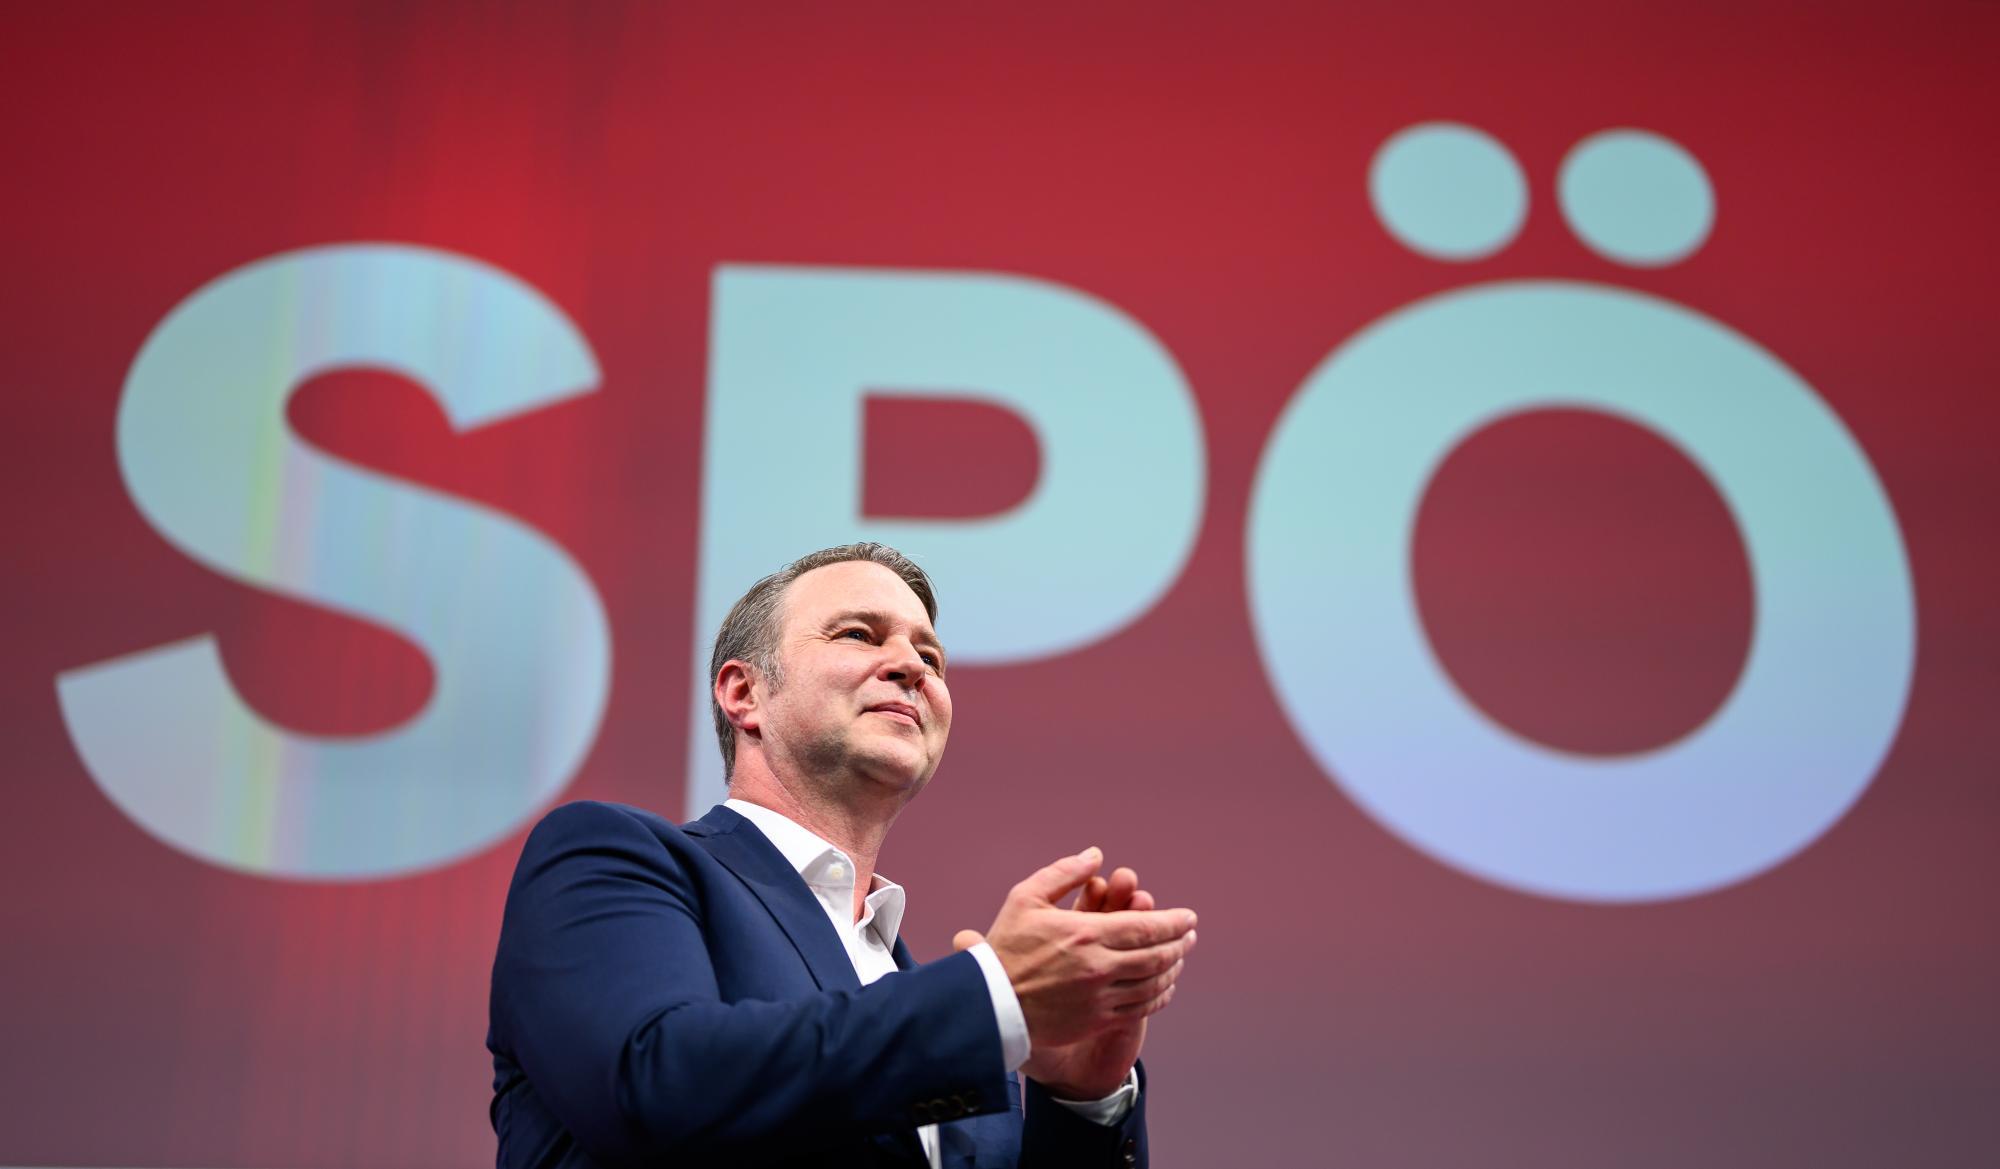 NR-Wahl: SPÖ-Ringen um wählbare Plätze bis zuletzt